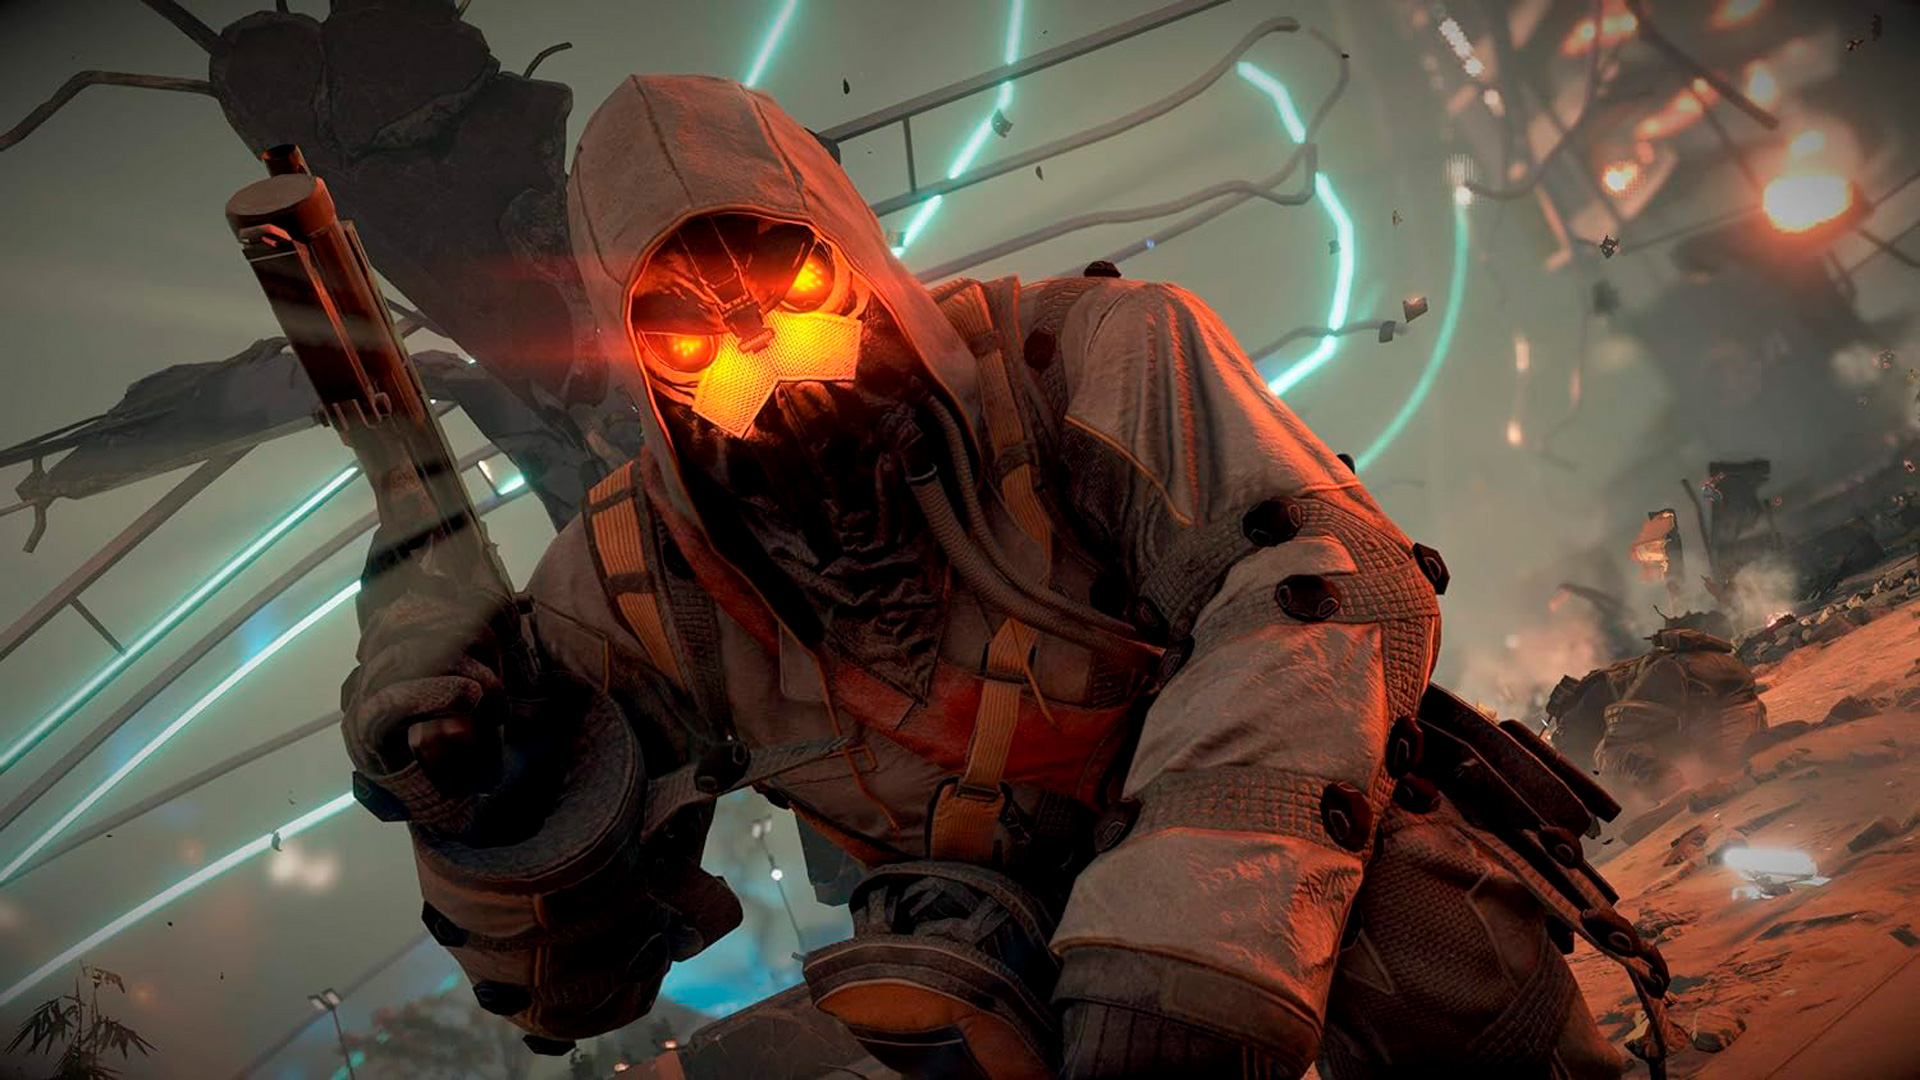 Jogo Killzone: Shadow Fall Hits para PS4